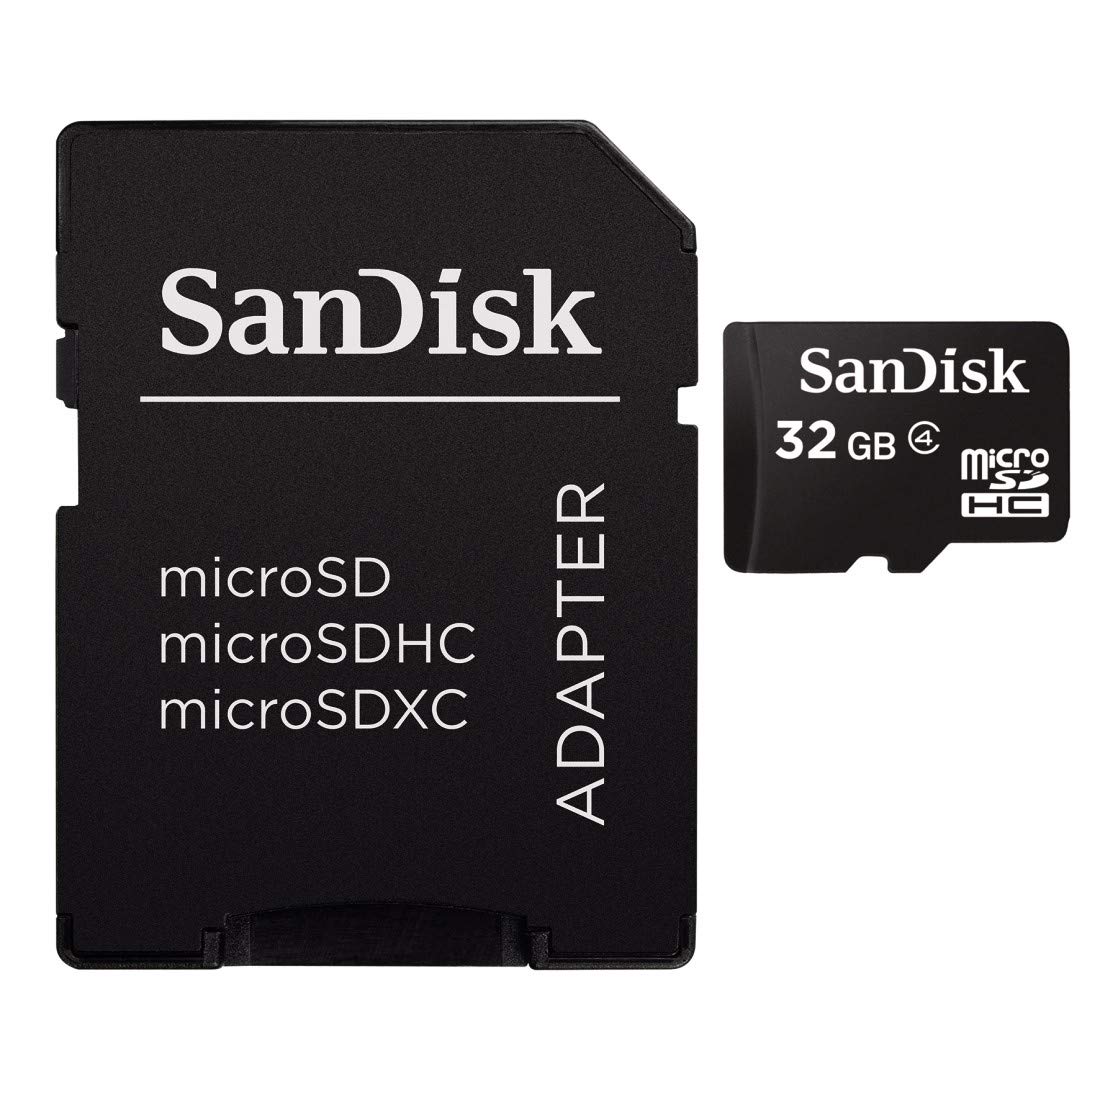 SD CARD 32GB MICROSD